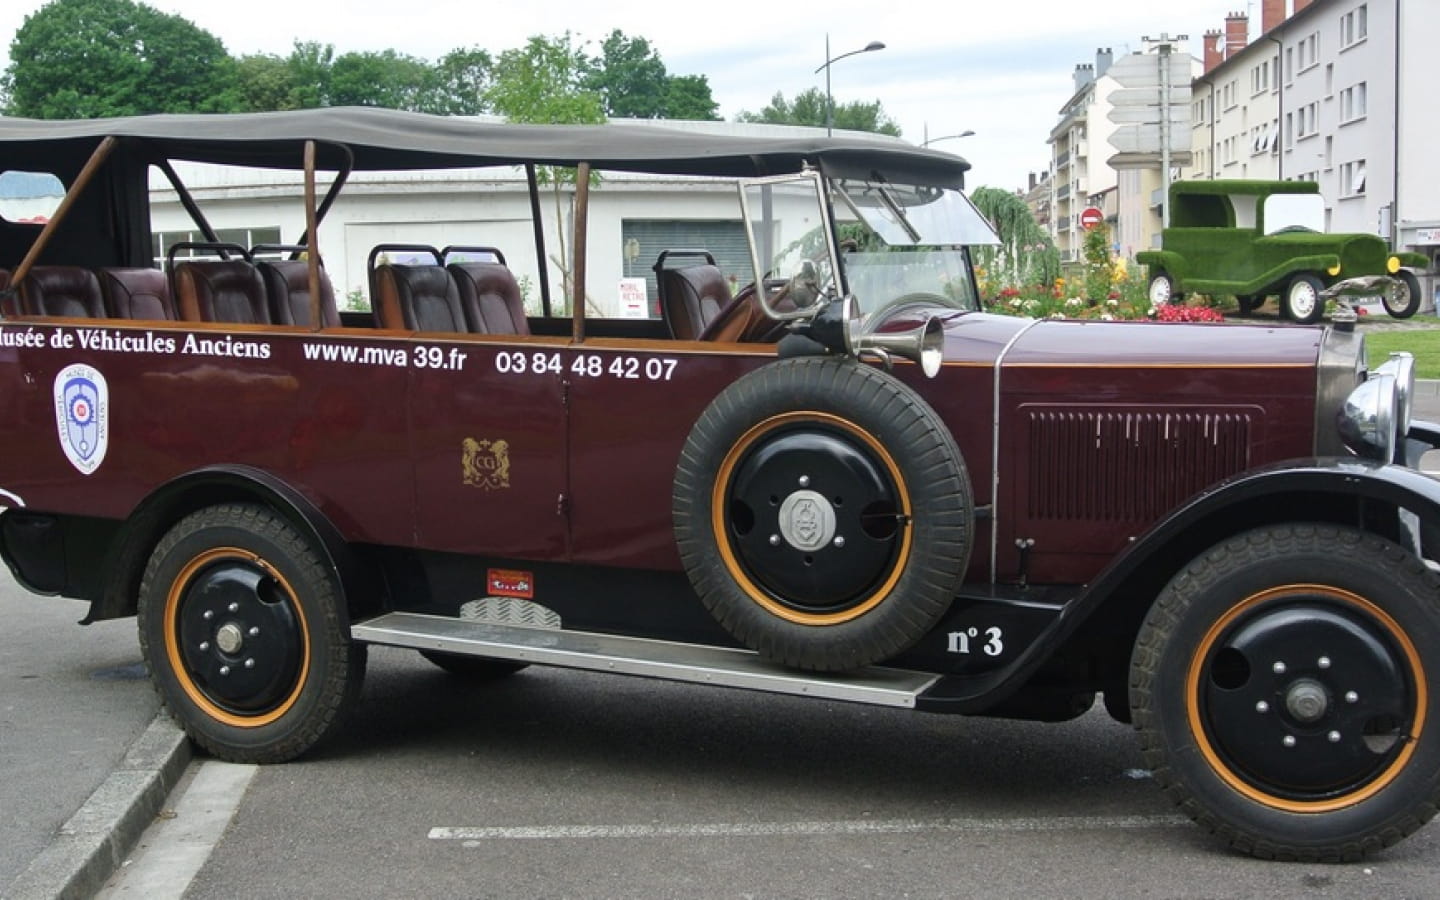 Musée de véhicules anciens